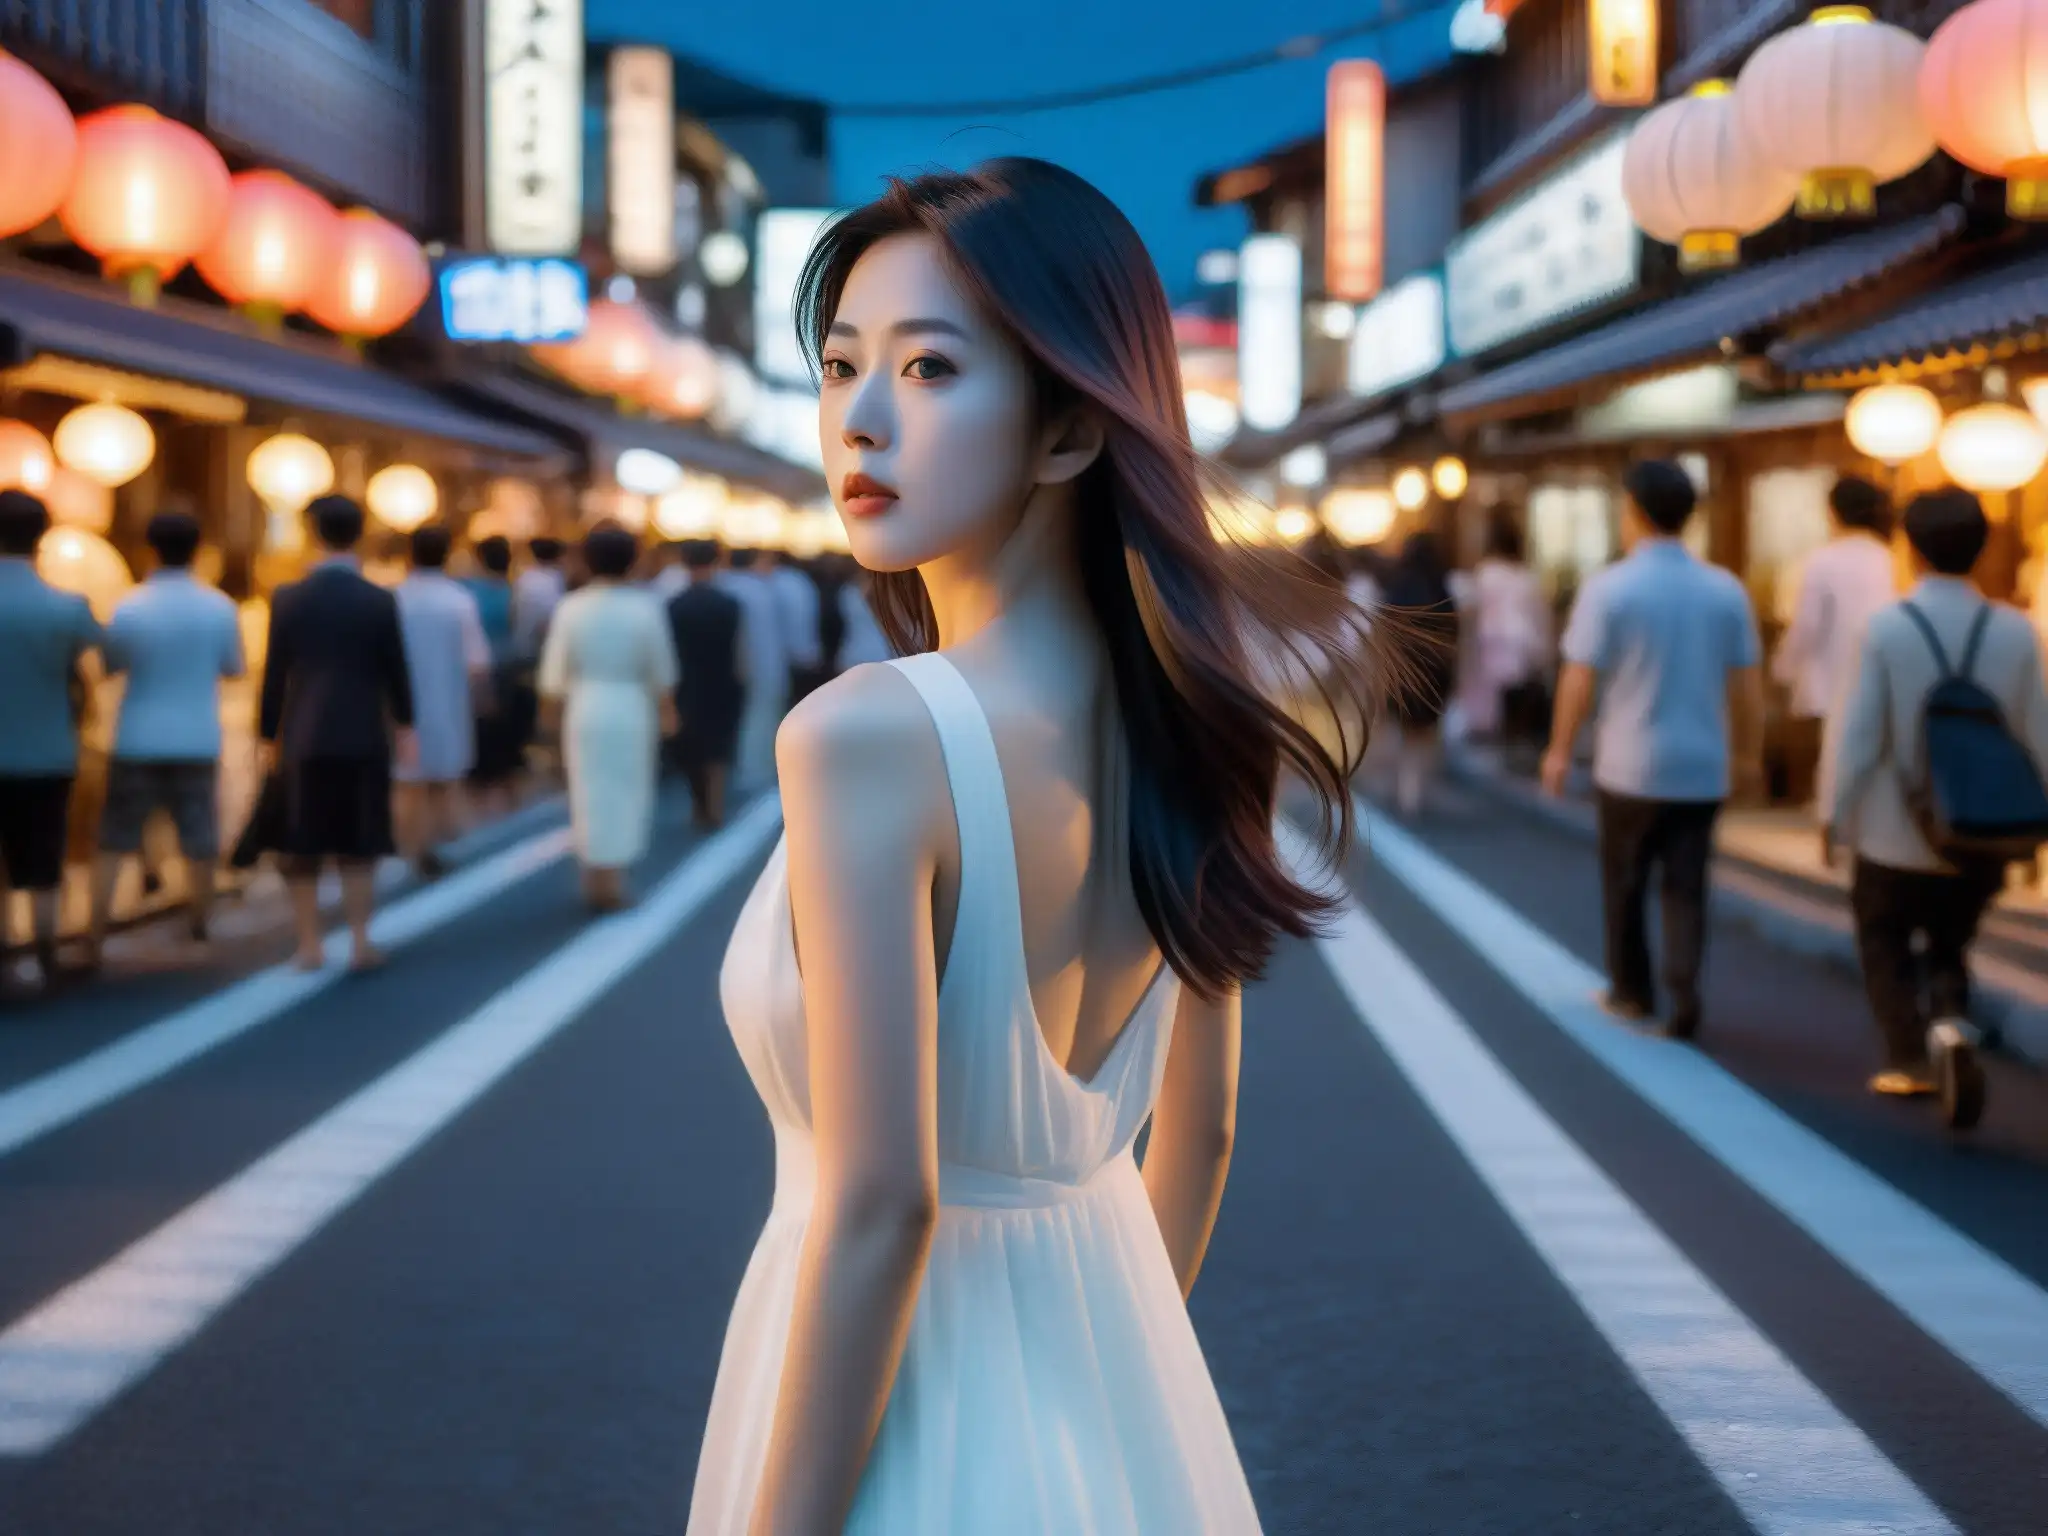 Una misteriosa mujer de blanco en una concurrida calle japonesa de noche, iluminada por las luces de la ciudad, encarna el enigmático mito urbano